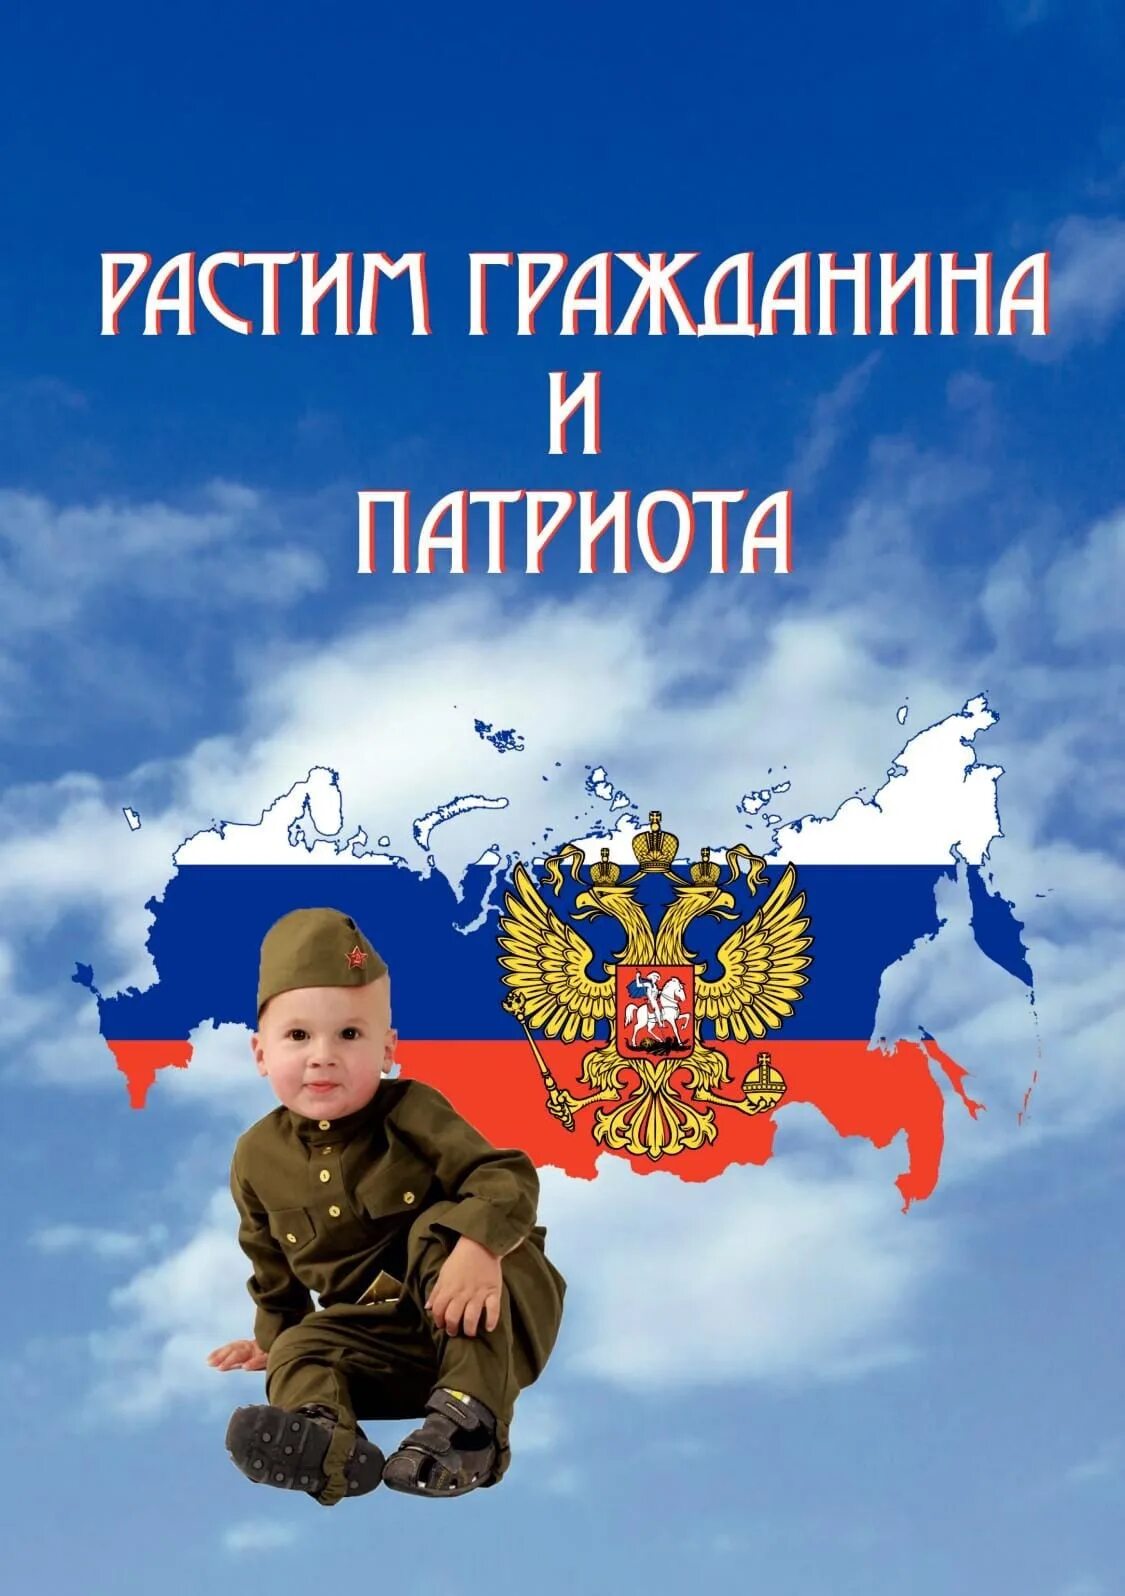 Про патриота россии